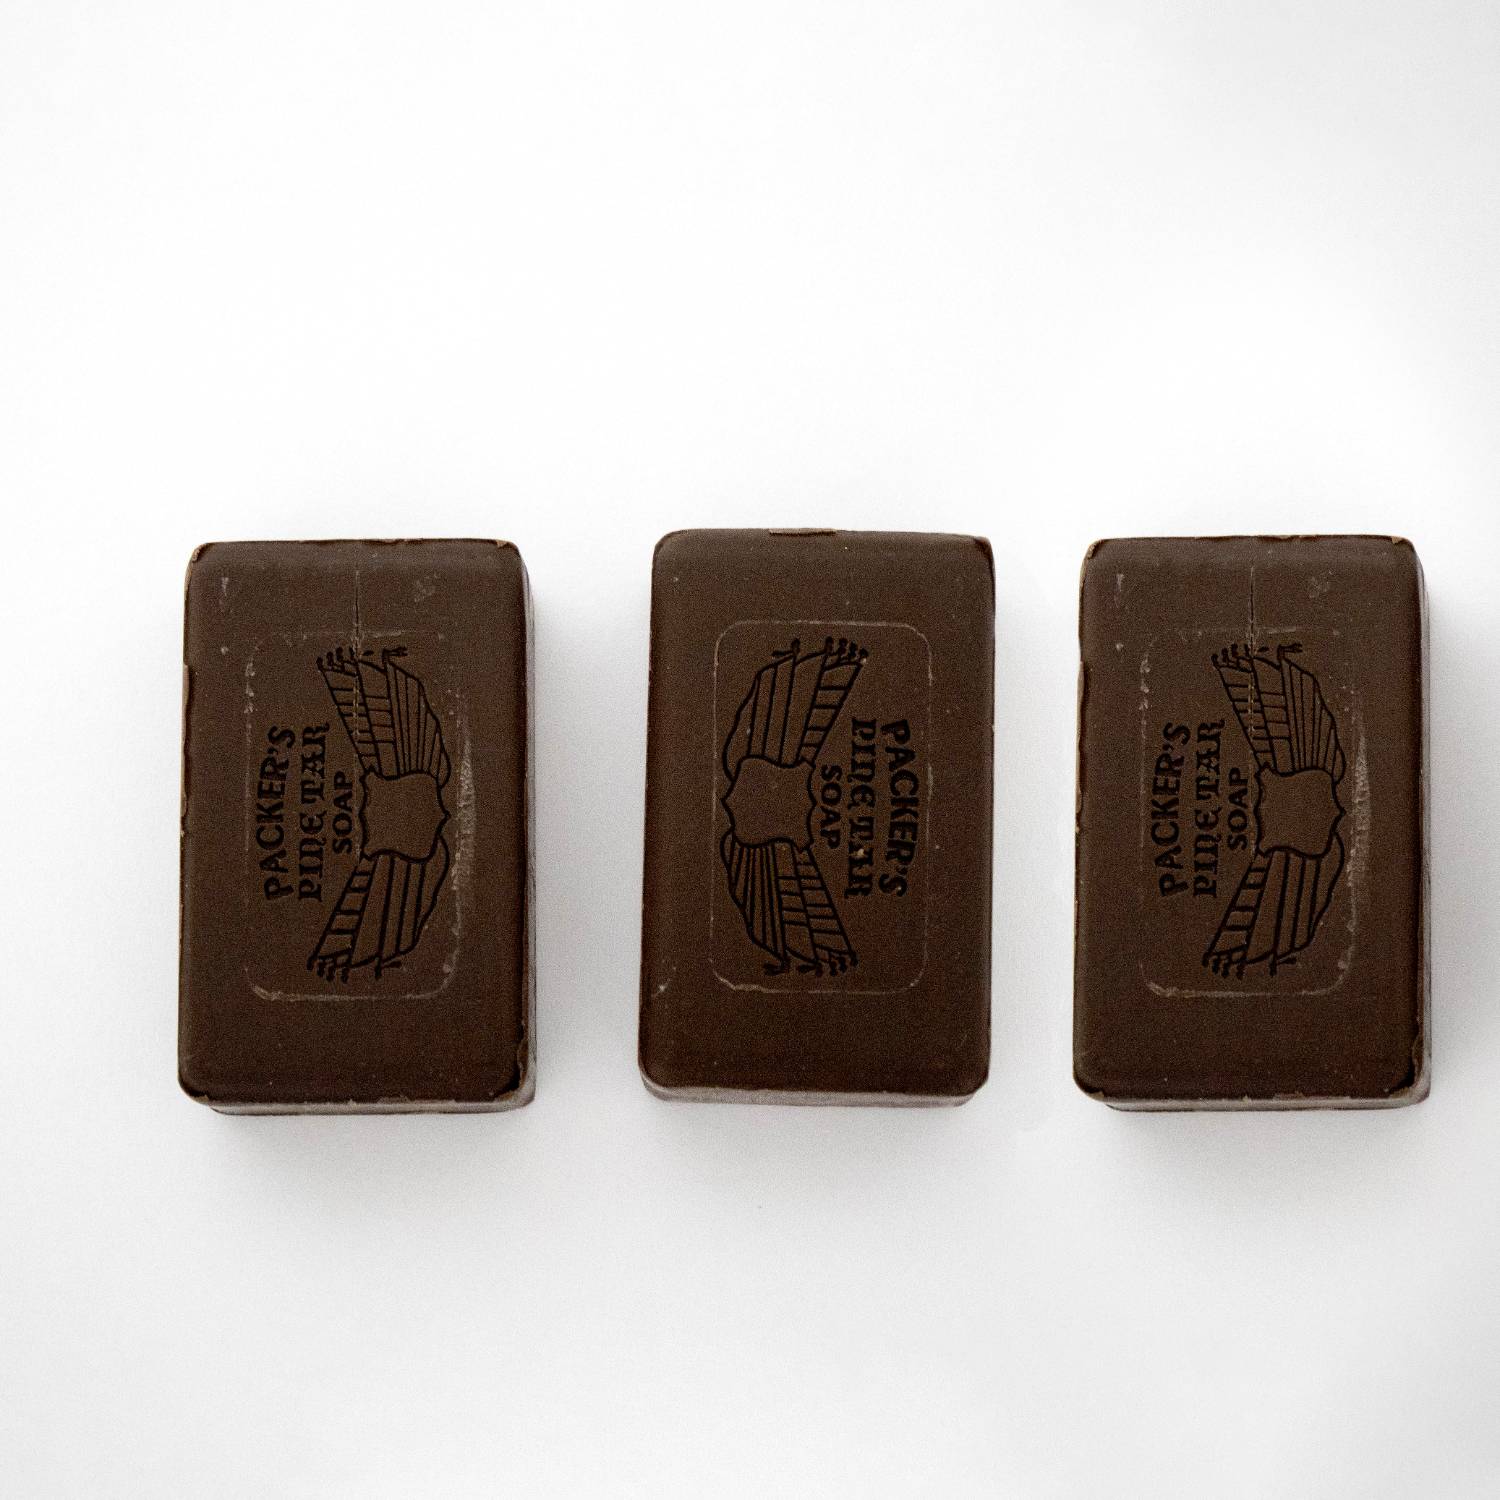 Packer's Pine Tar Bar Soap - Pack of 3 (3.3 oz bars)